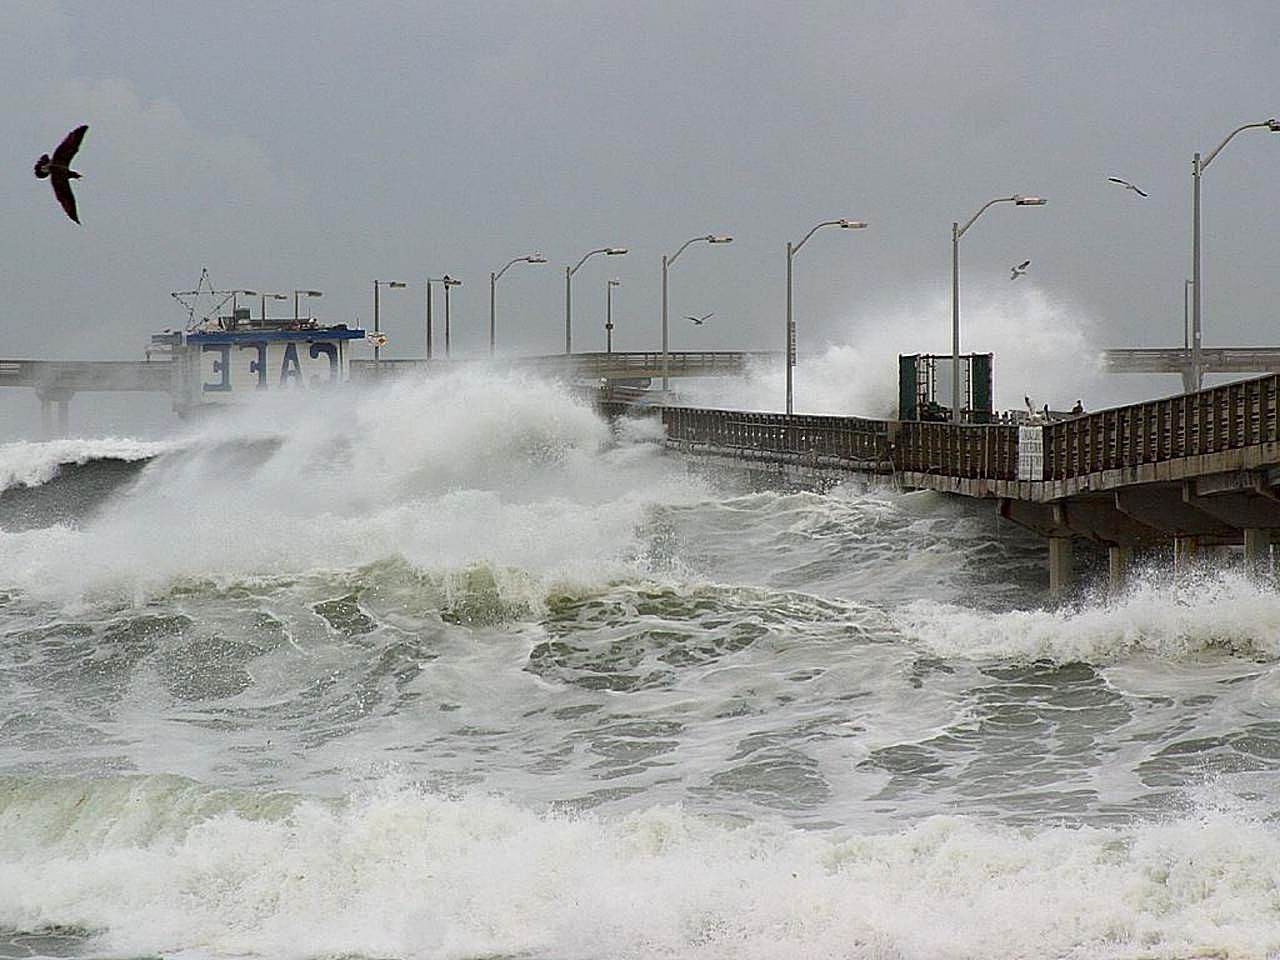 Ondas gigantes causadas pelo El Niño castigam a costa de San Diego, nos EUA (Foto: Wikimedia Commons)